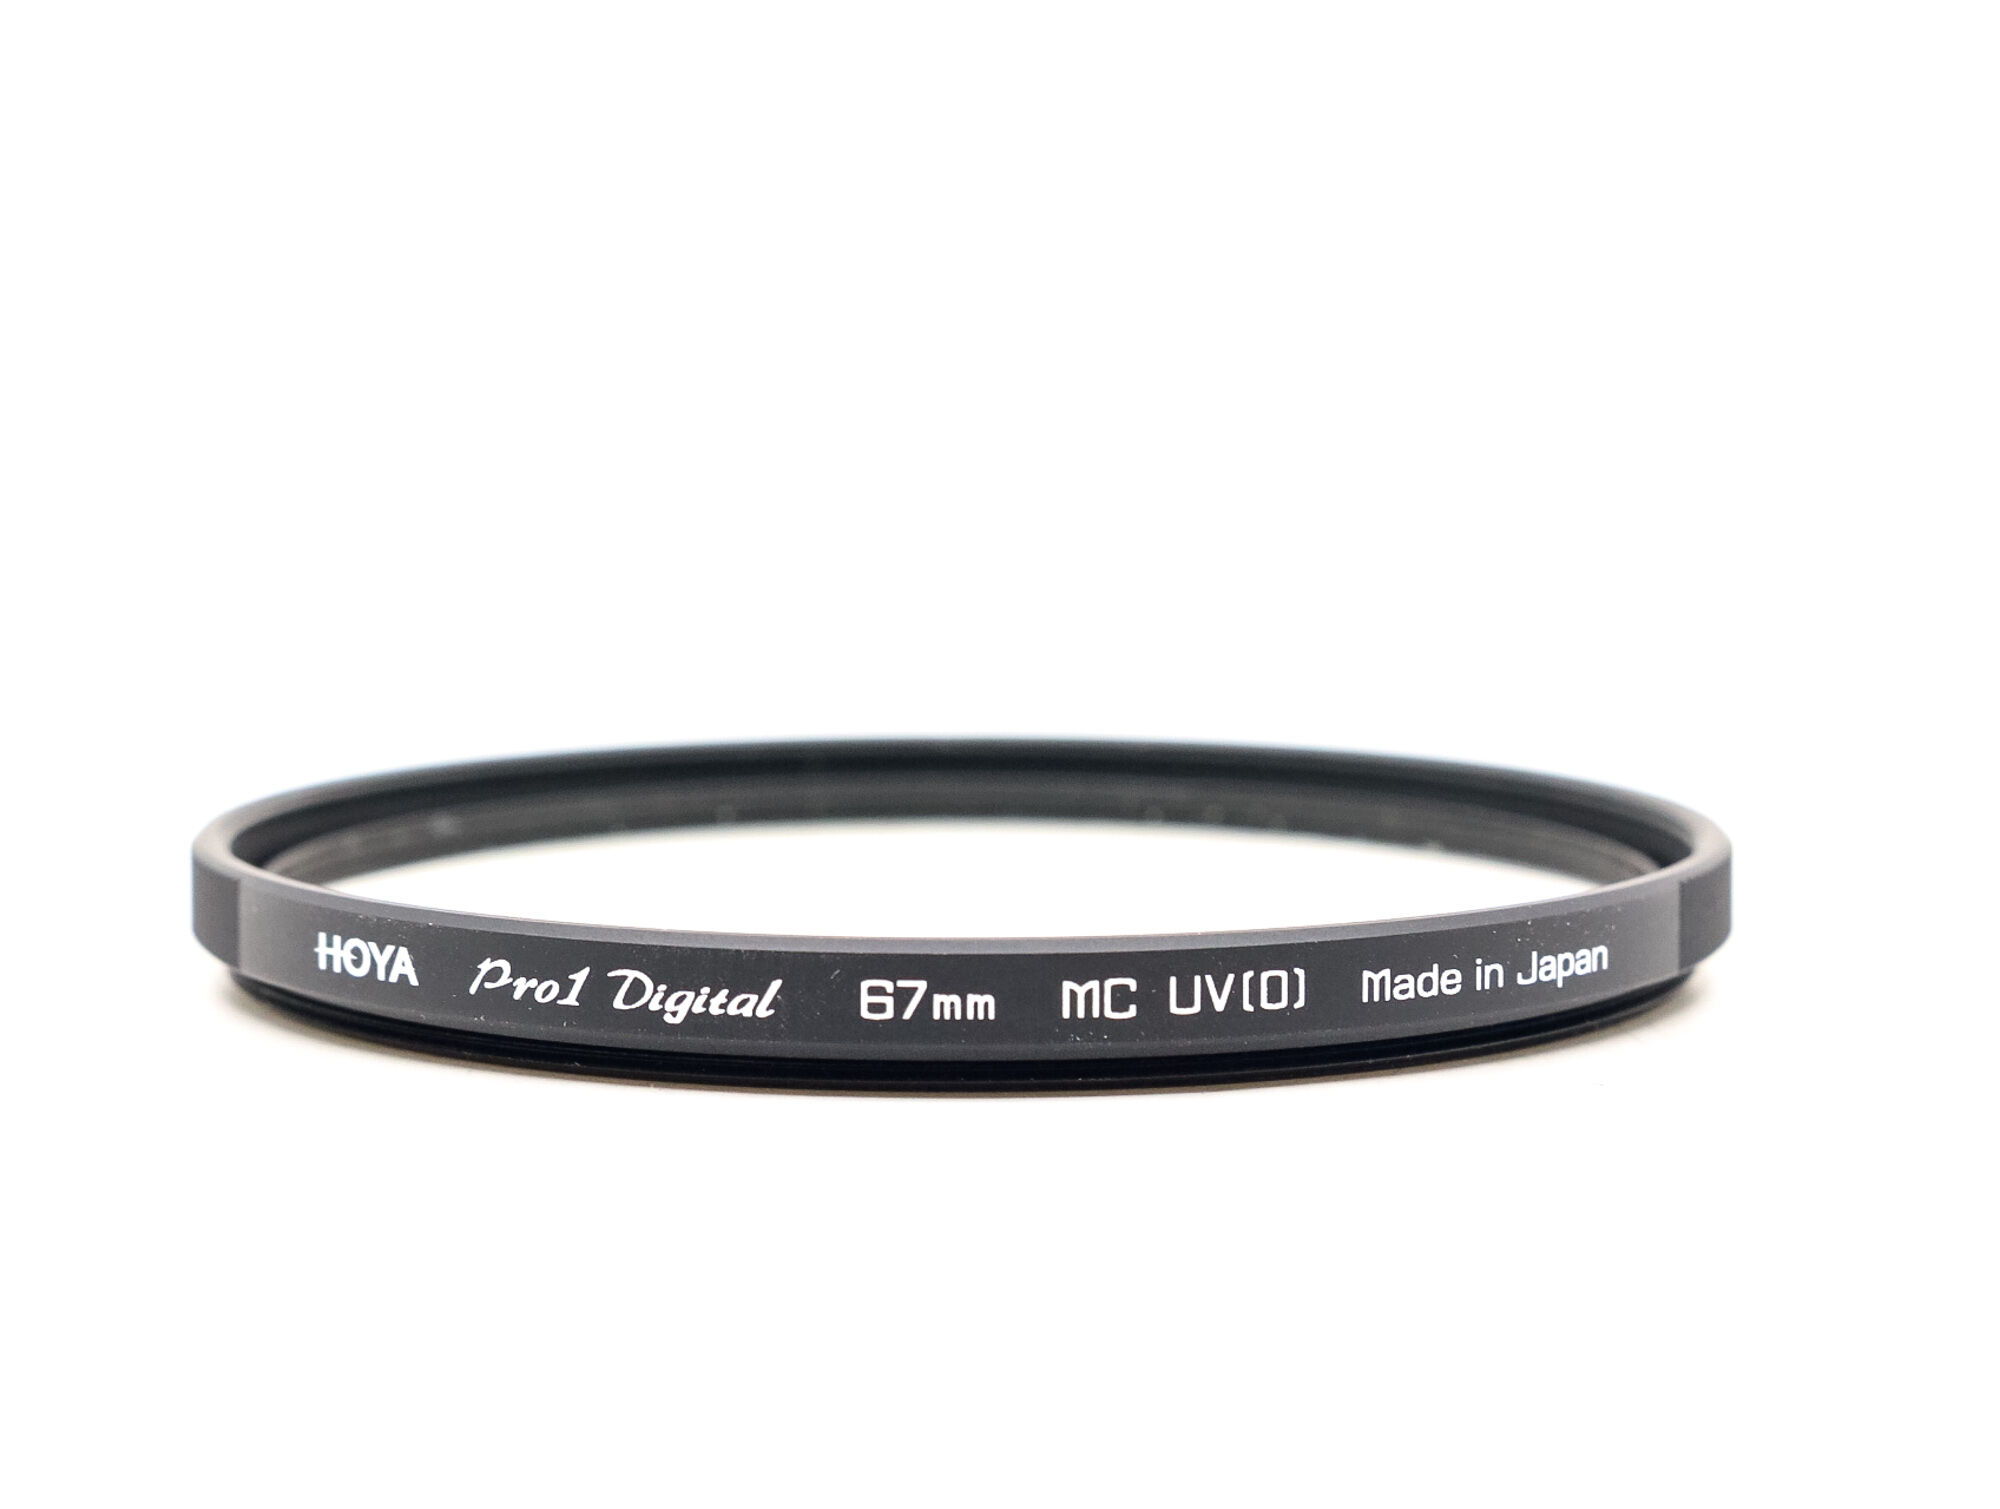 Hoya 67mm Pro 1 Digital UV Filter (Condition: Good)